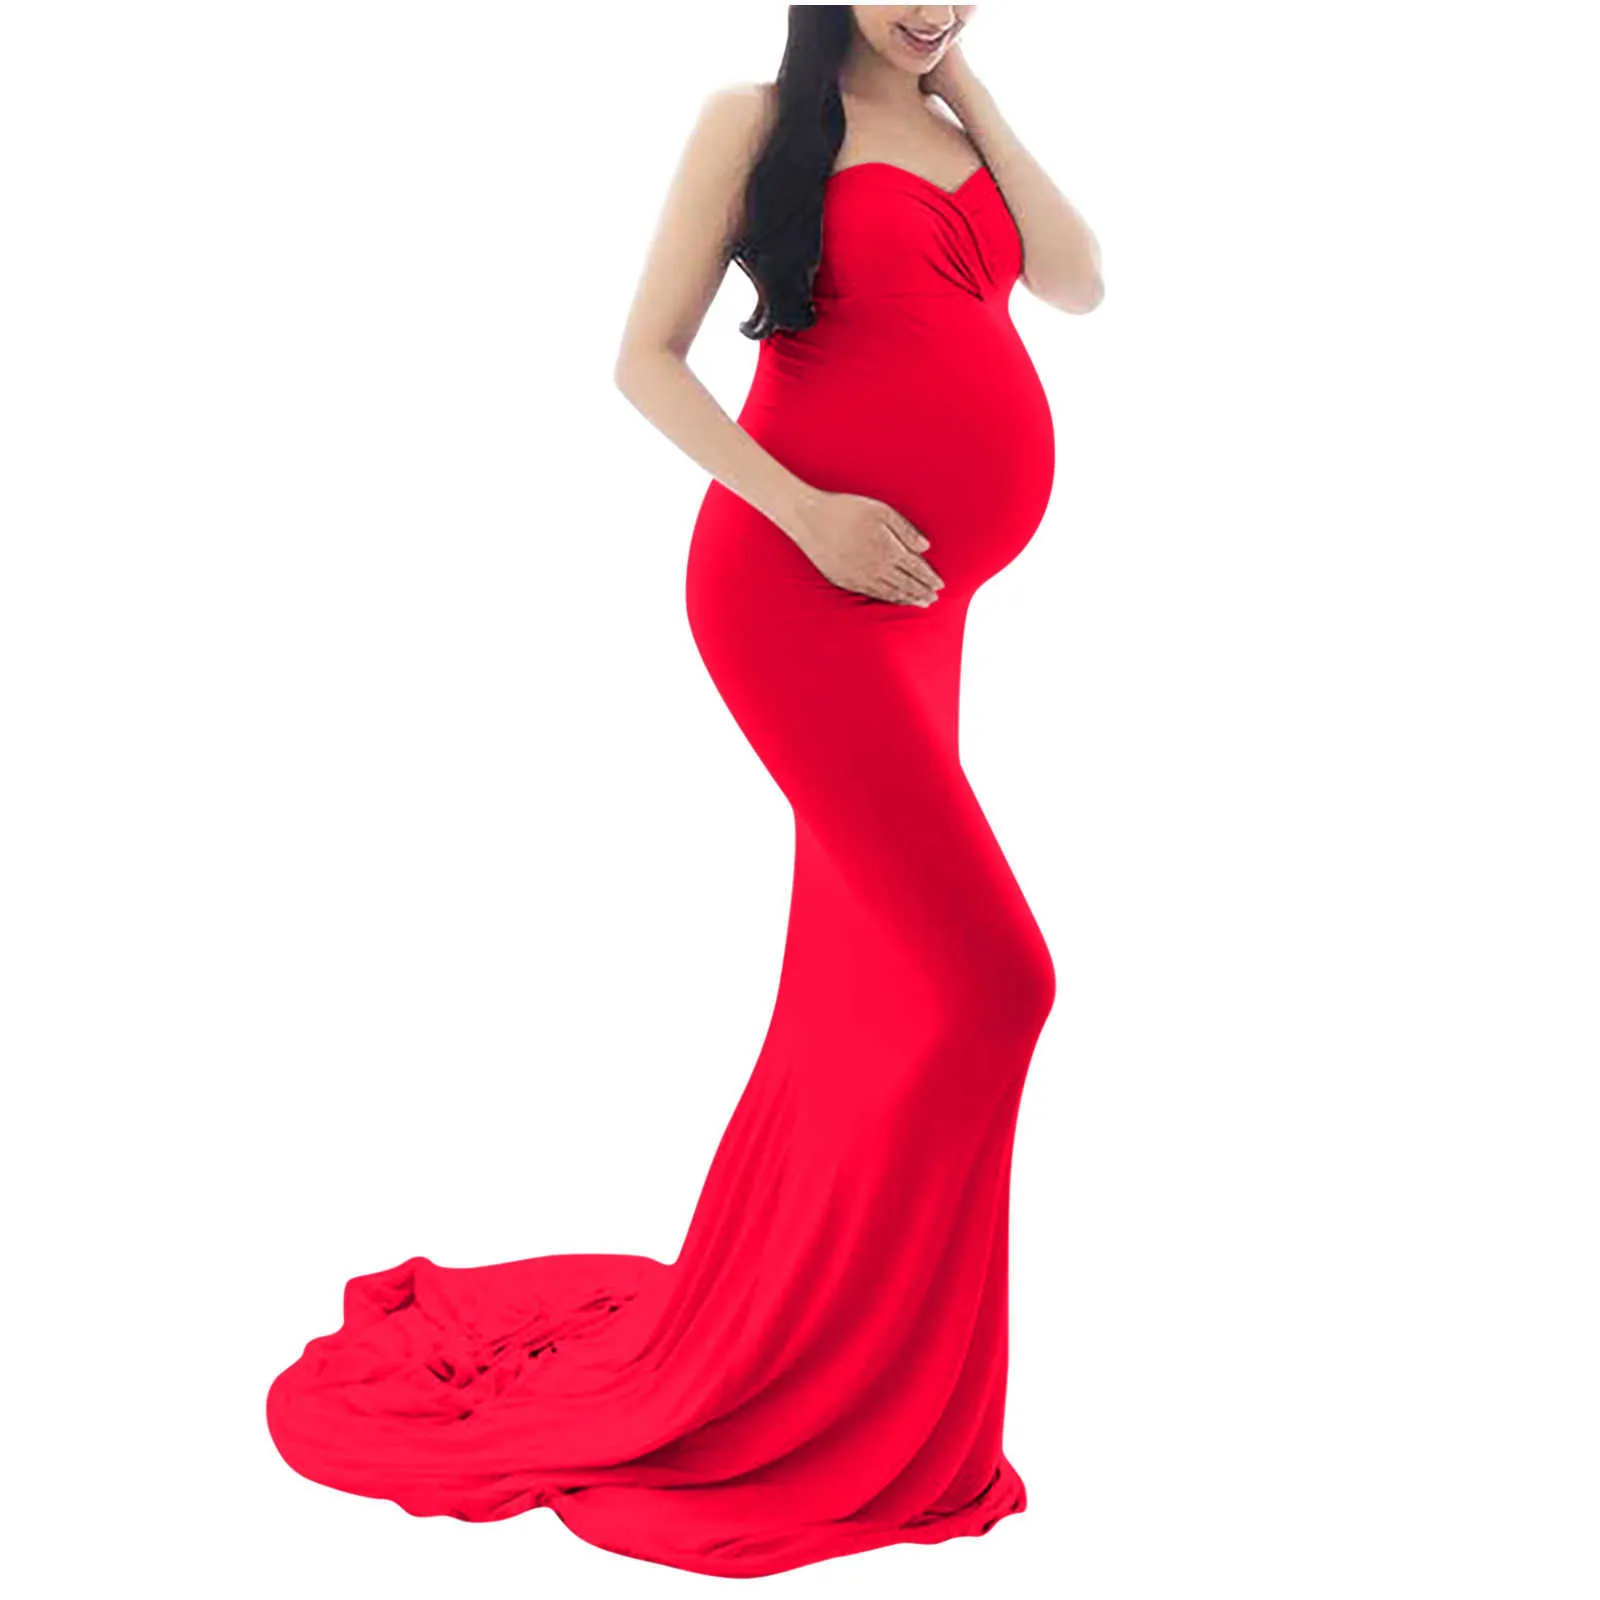 Seksowne sukienki ciążowe na fotografii shoot shiffon sukienka ciążowa fotografia propaga maksiczna suknia dla kobiet w ciąży odzież x0902